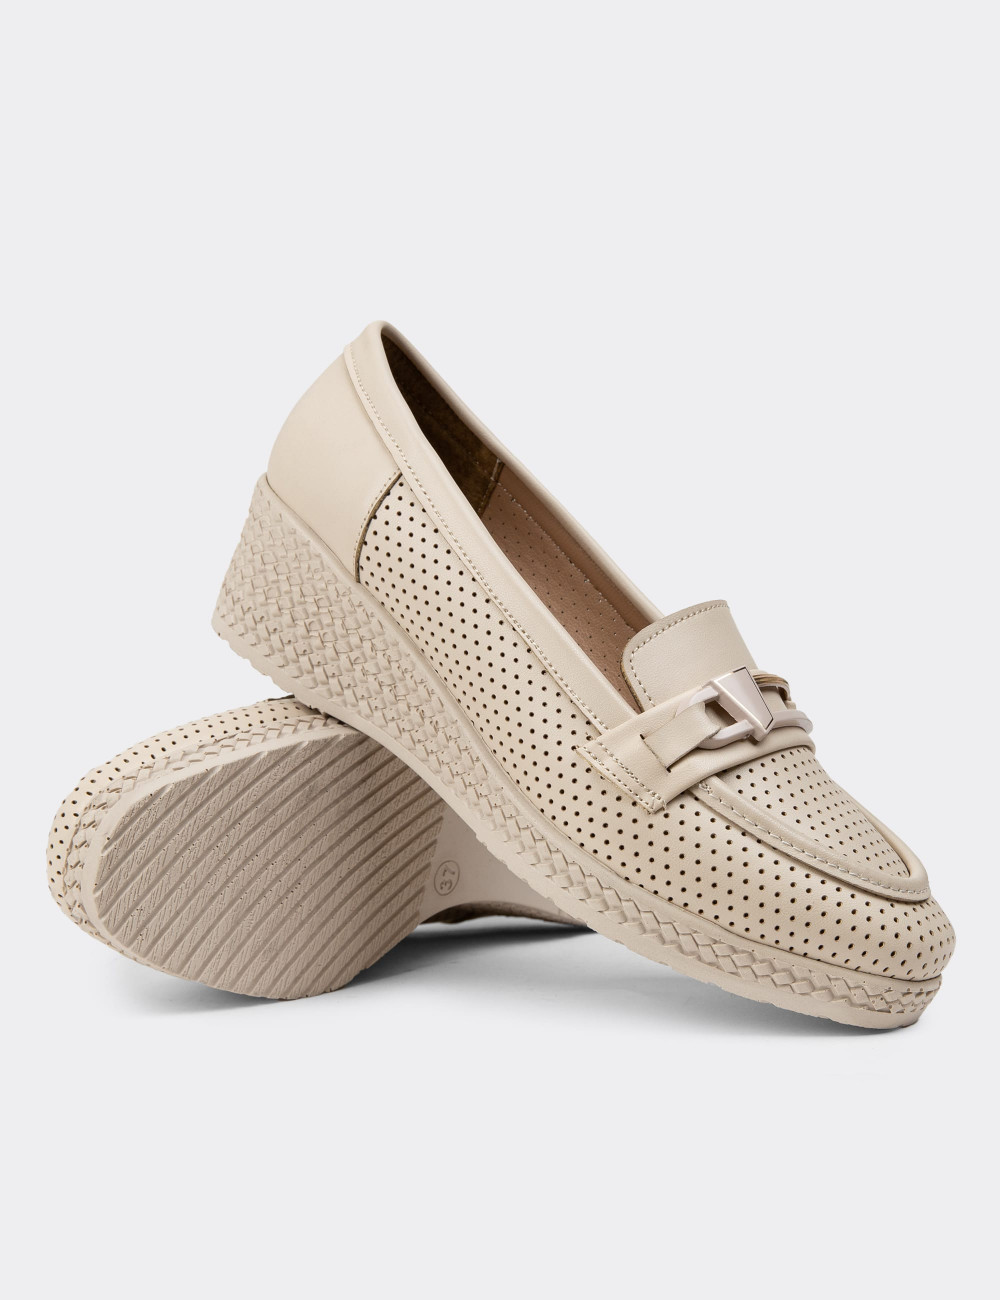 Bej Rengi Kadın Dolgu Topuk Günlük Ayakkabı - K2358ZBEJC01